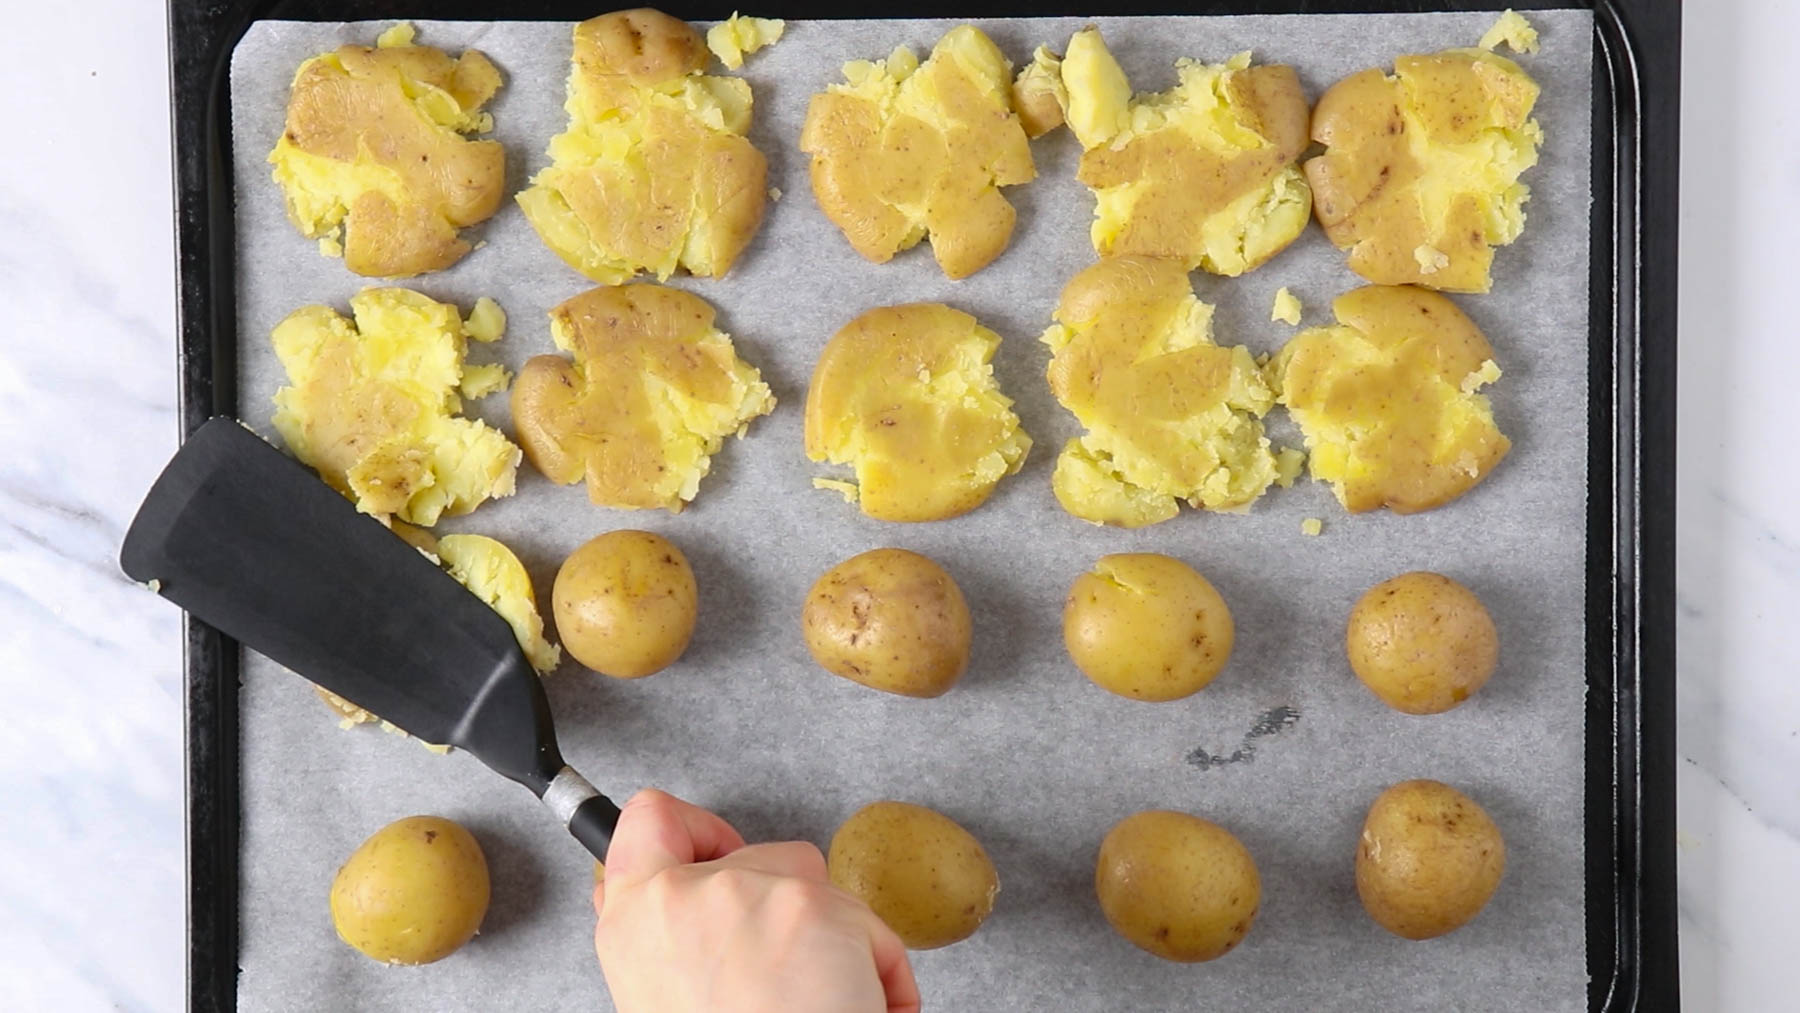 Smashing potatoes on a sheet pan.